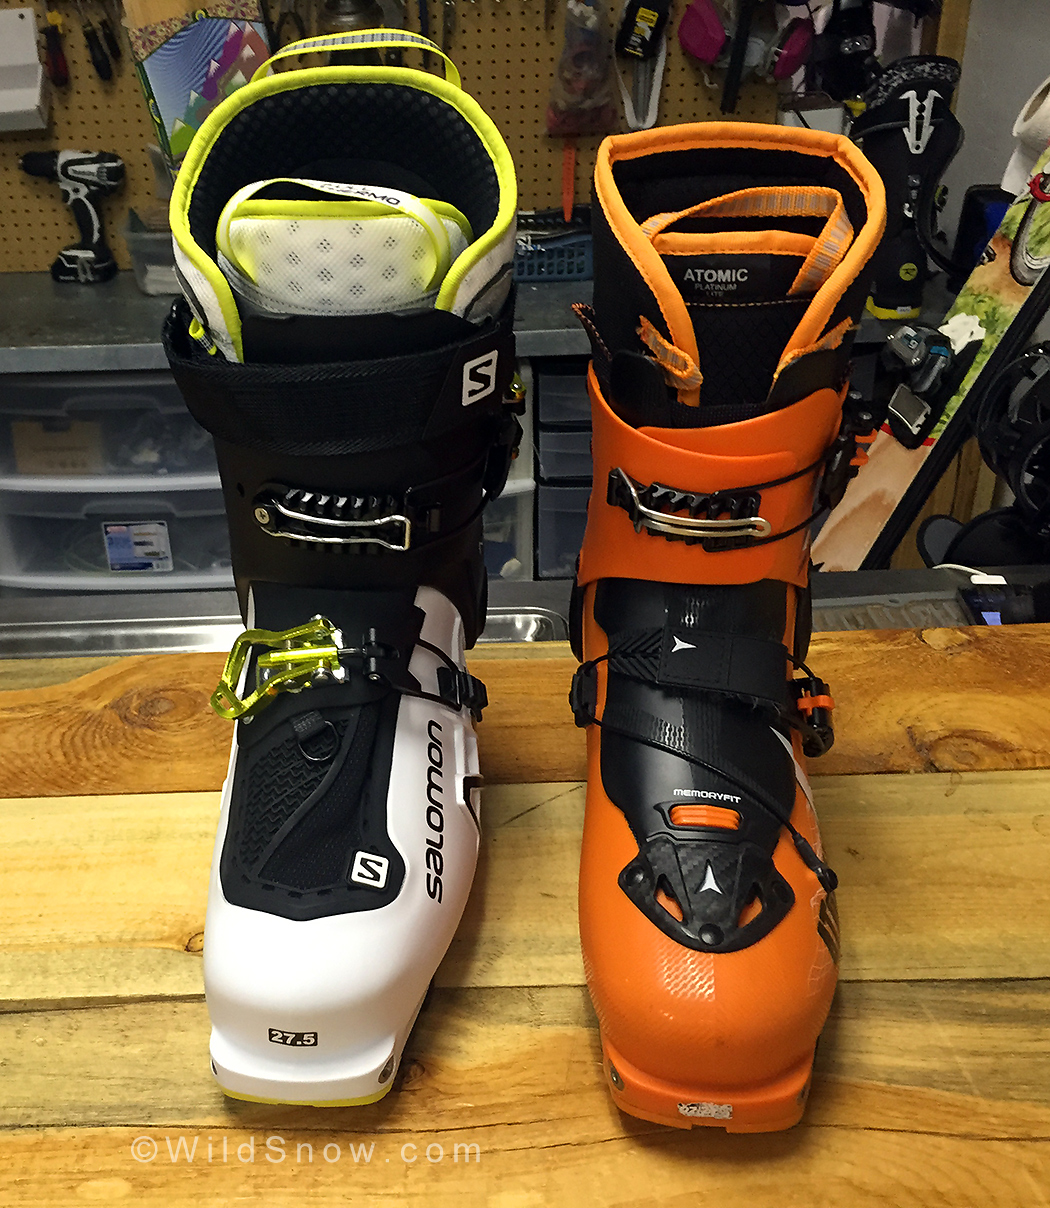 Ski Touring Boots: Atomic Backland Carbon Light vs Salomon Explore - The Backcountry Ski Touring Blog